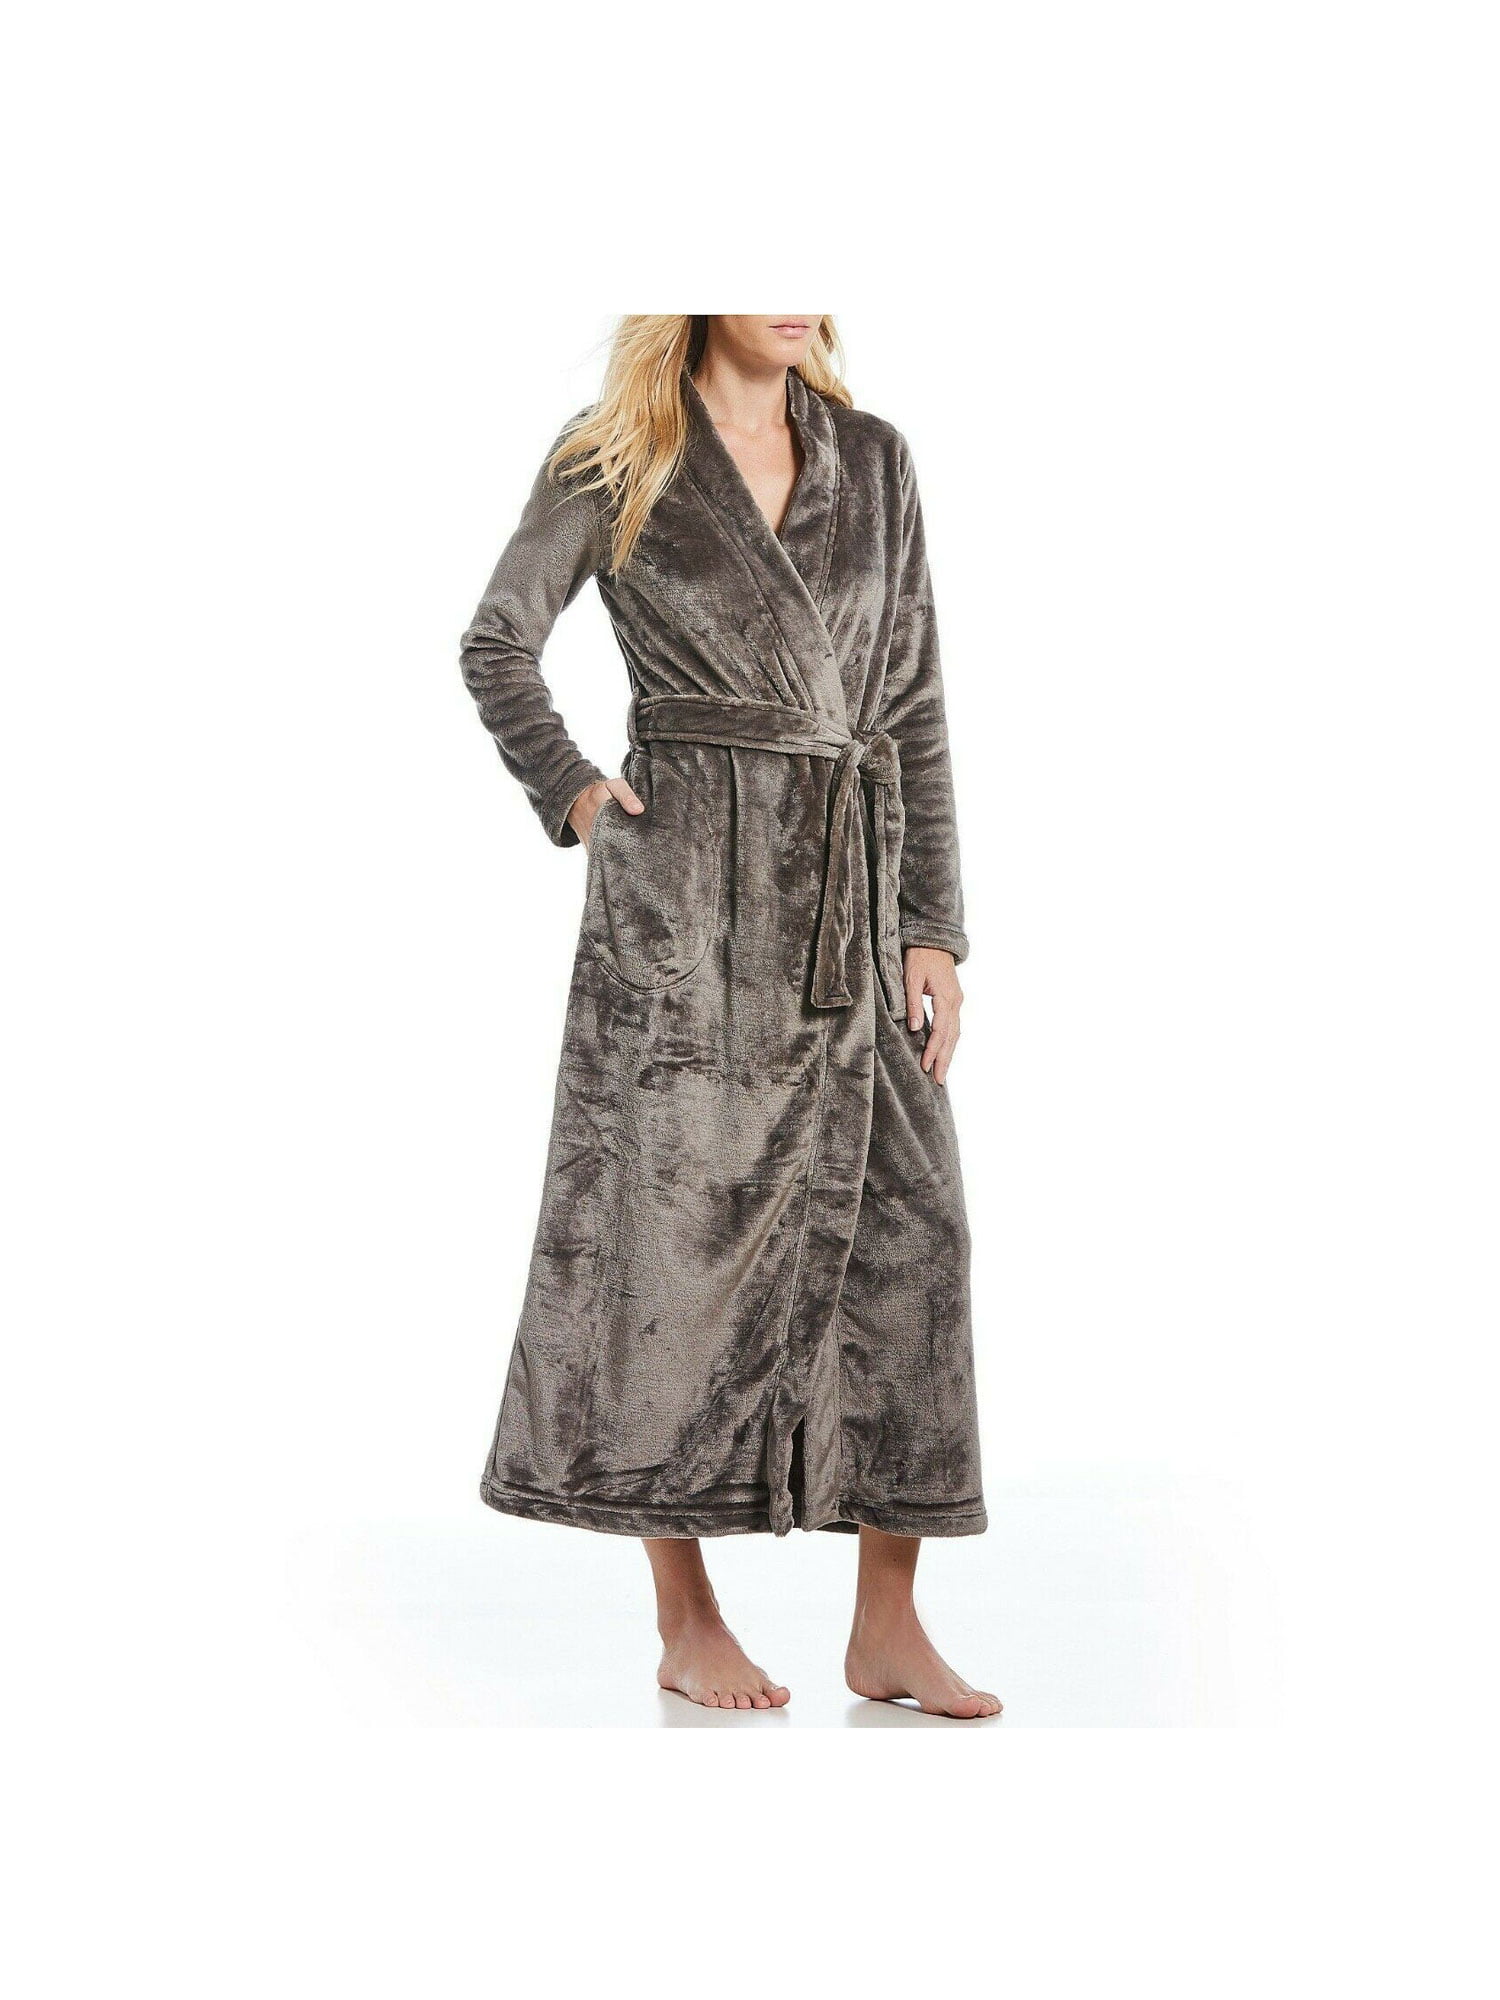 ugg marlow fleece robe